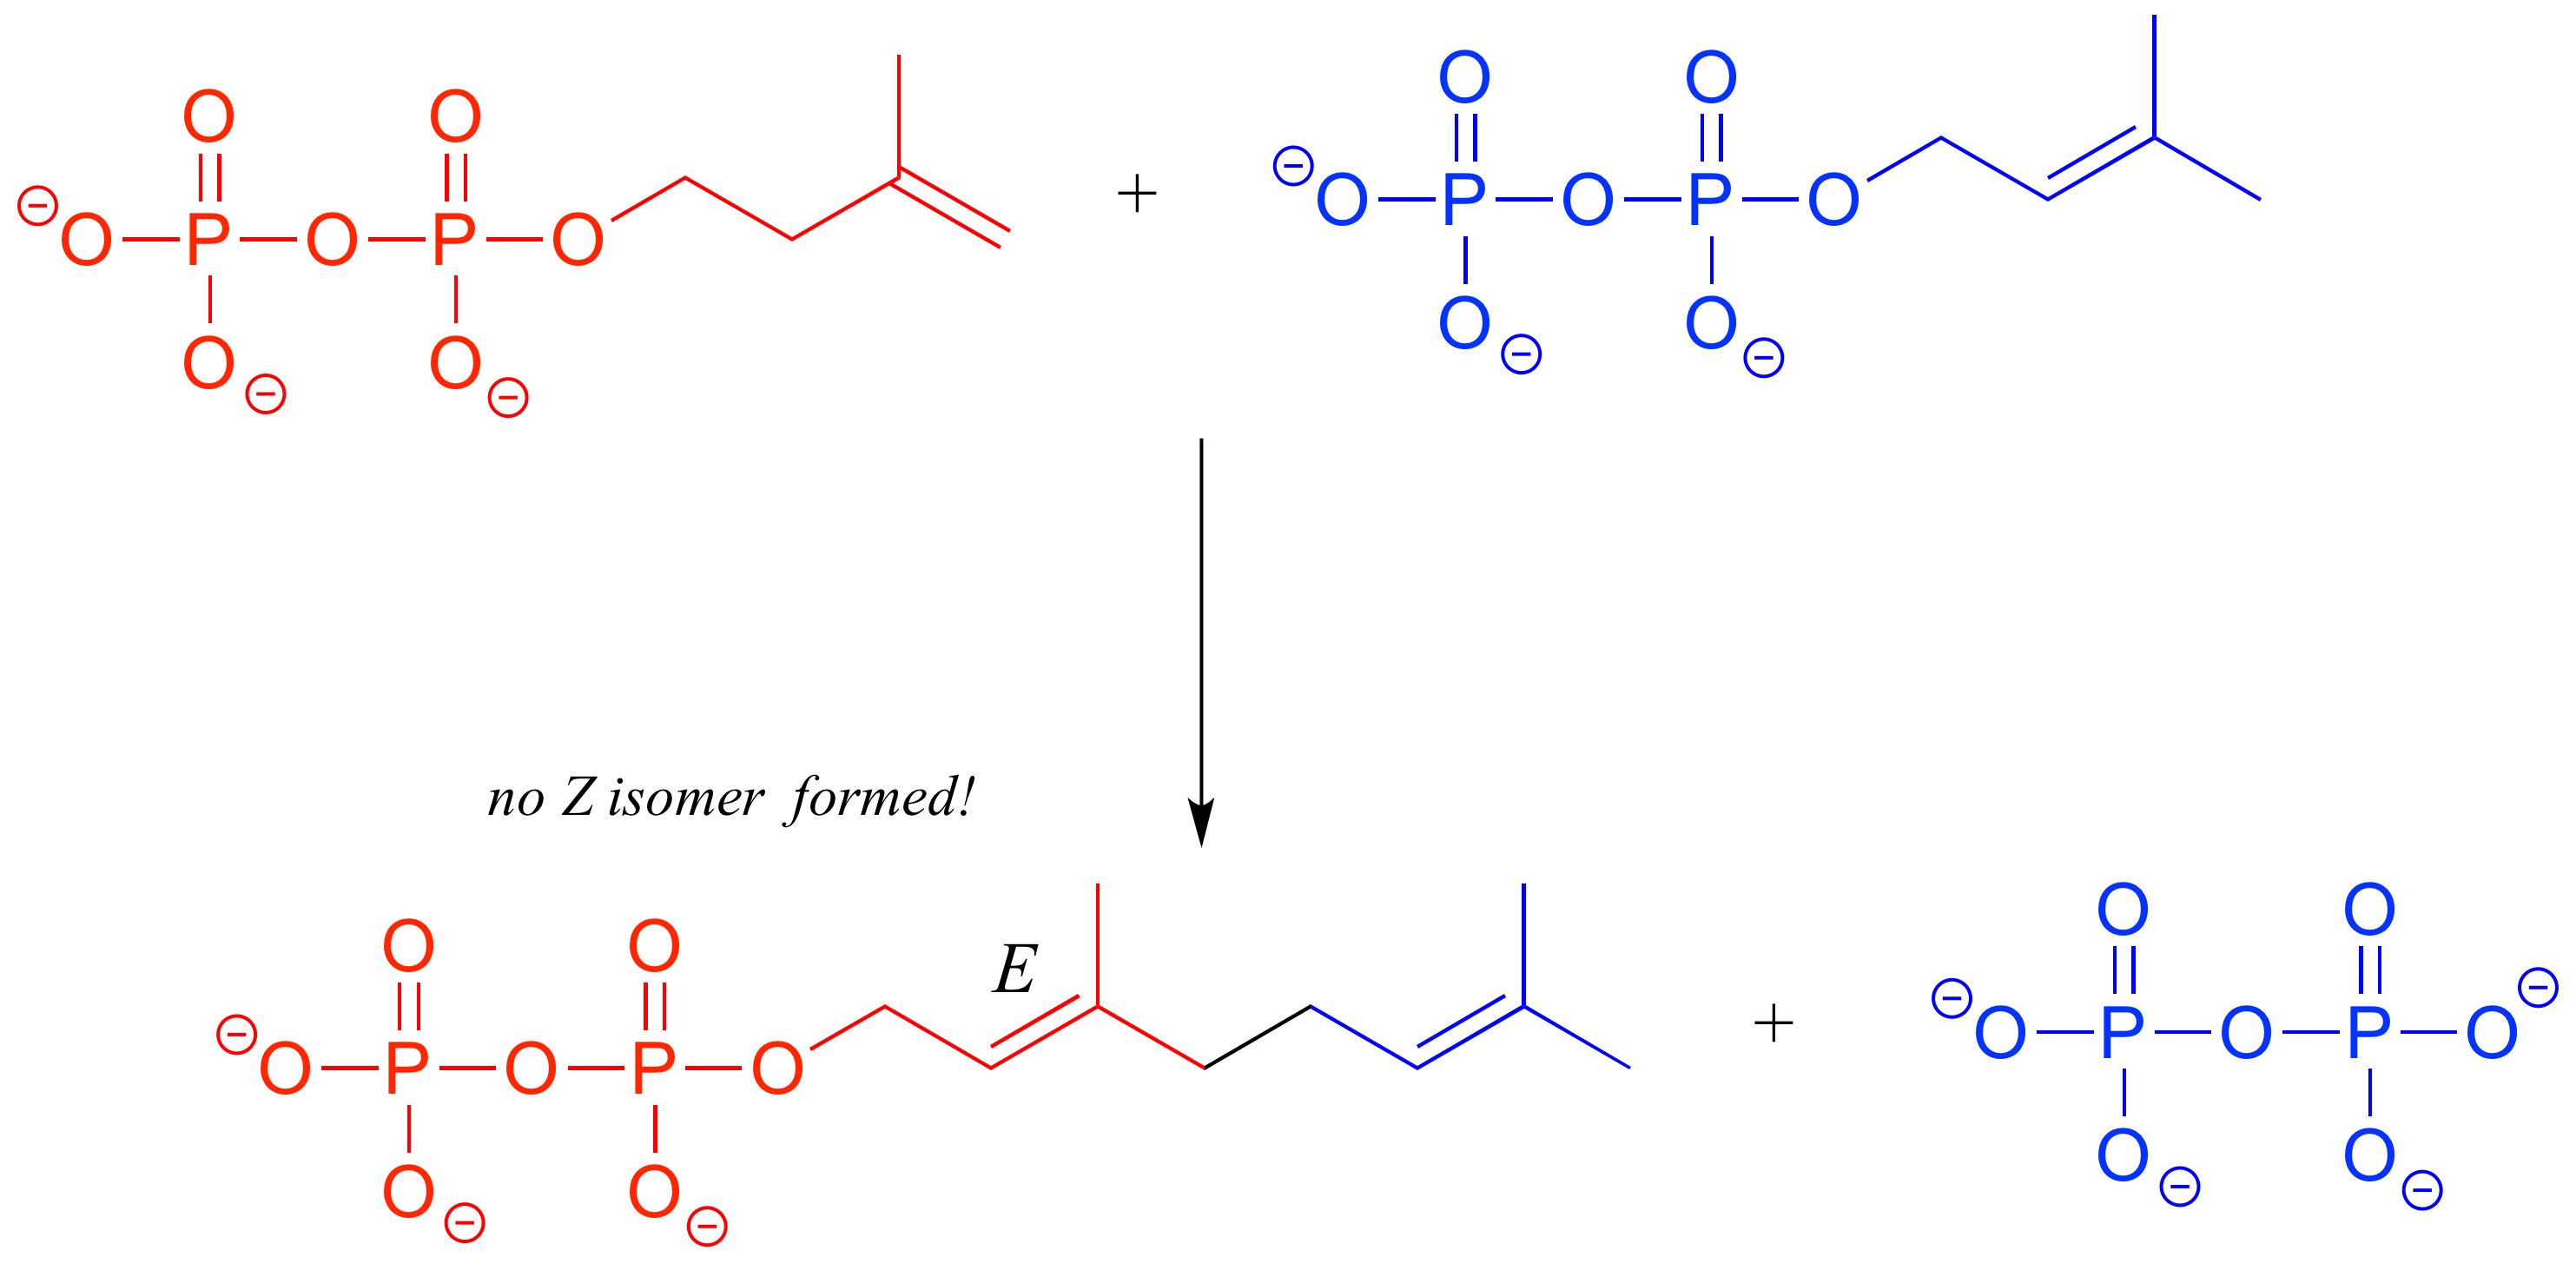 Dos moléculas de difosfato; la izquierda (roja) tiene un alqueno terminal en la cadena carbonada y la derecha (azul) tiene un alqueno trans en la cadena carbonada. Las cadenas de carbono se combinan y dan inicio a uno de los grupos difosfato. Se forma E alqueno. Texto: no se formó el isómero Z.